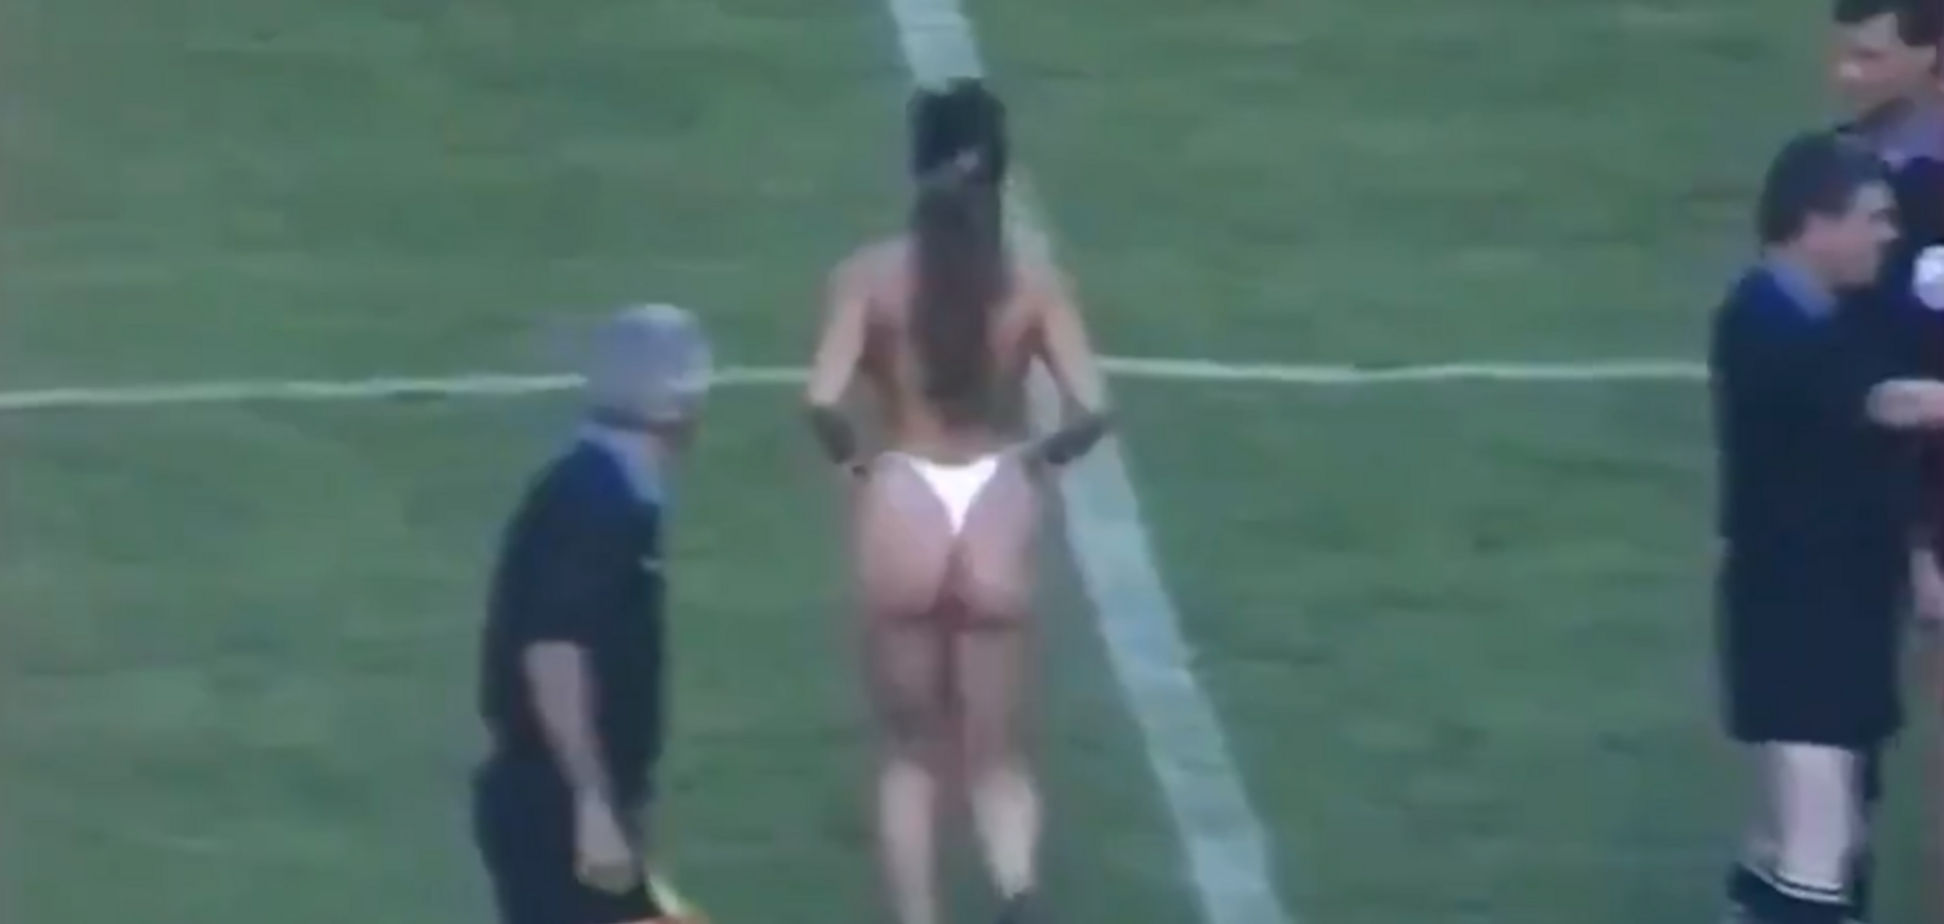 Оголена дівчина відкрила футбольний матч: в мережі згадали 18+ відео з Угорщини